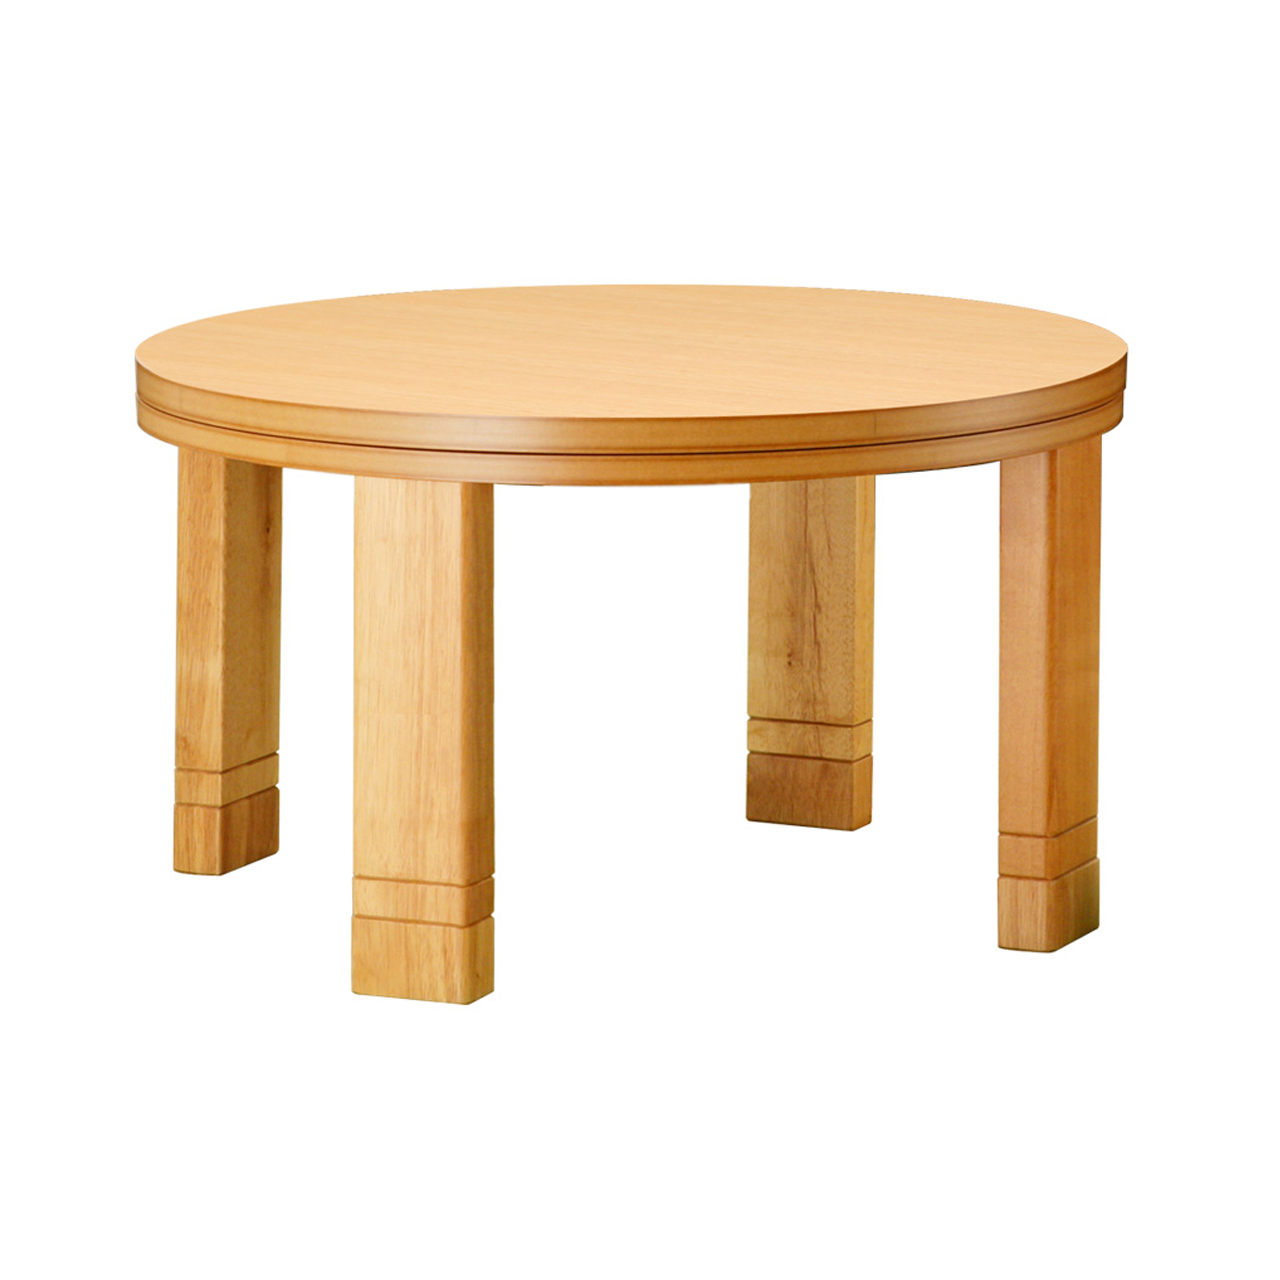 こたつテーブル 円形 フラットヒーター 高さ4段階調節つき天然木丸型 